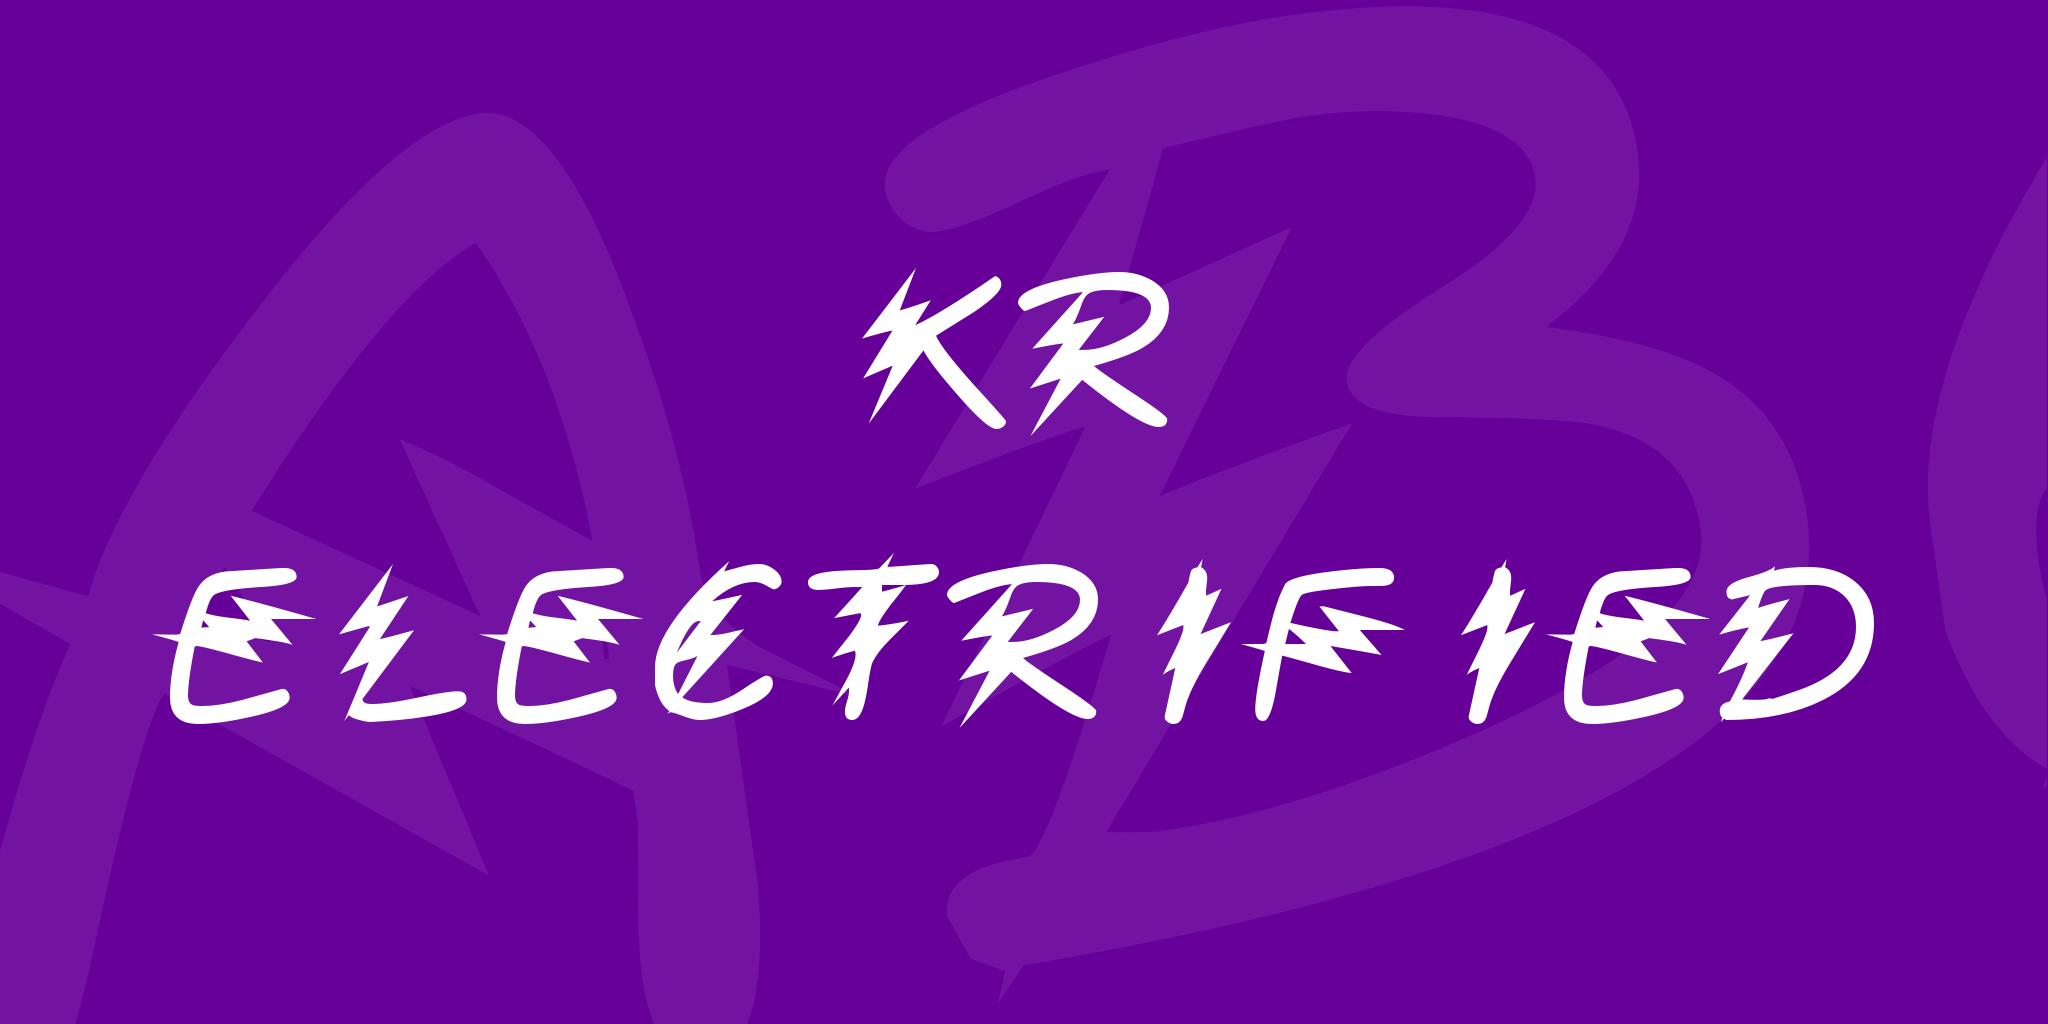 Kr Electrified